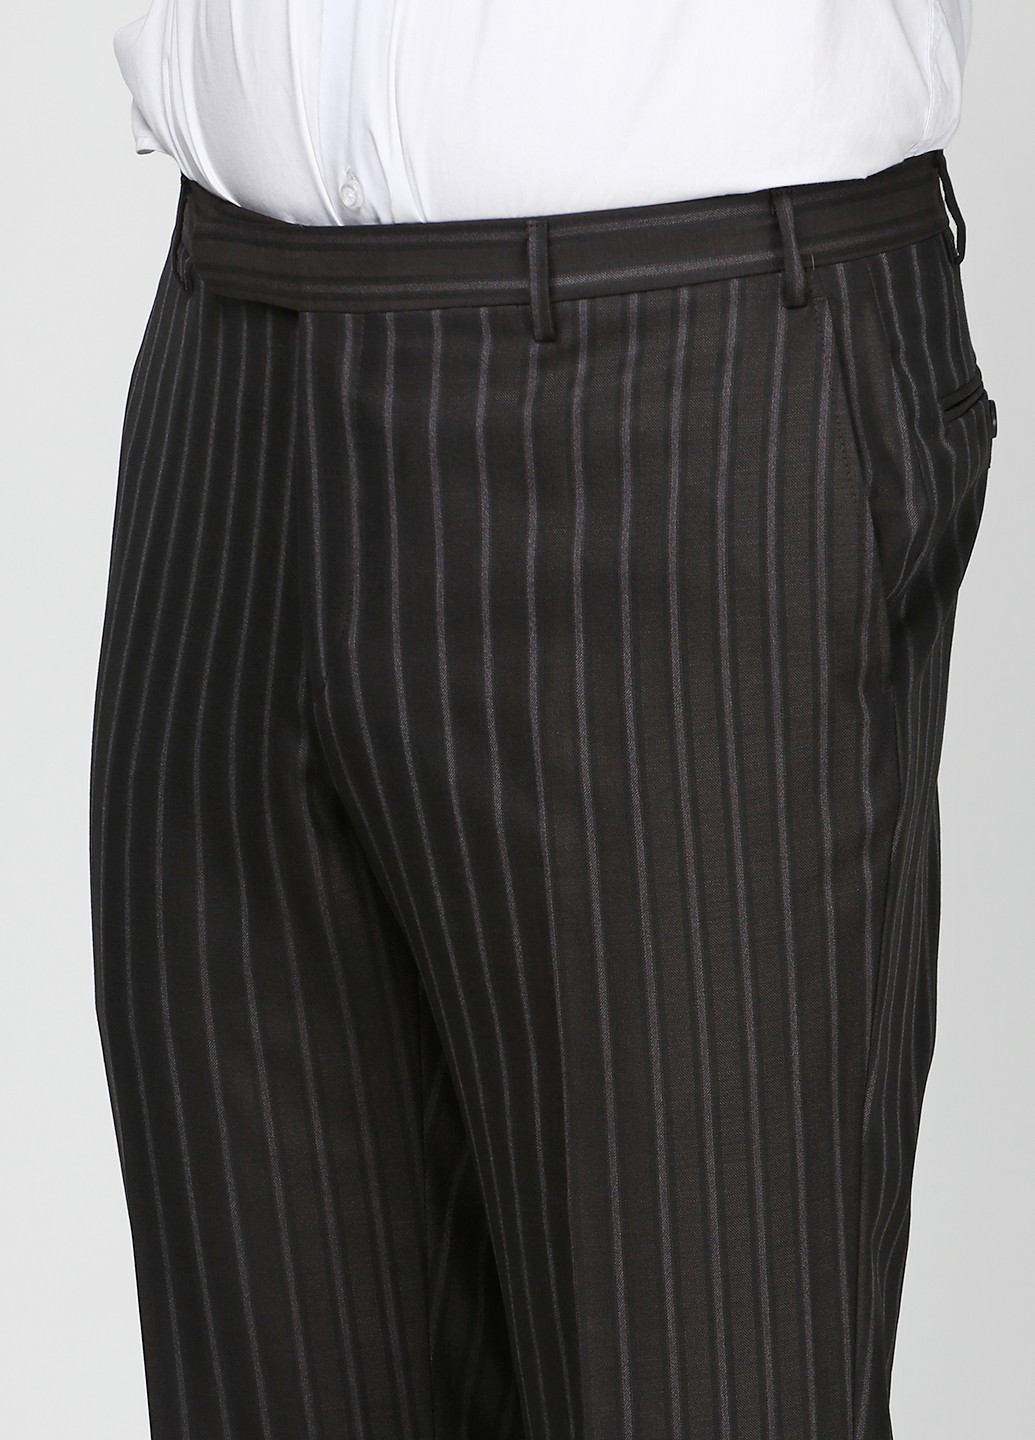 Черный демисезонный костюм (пиджак, брюки) брючный Corneliani